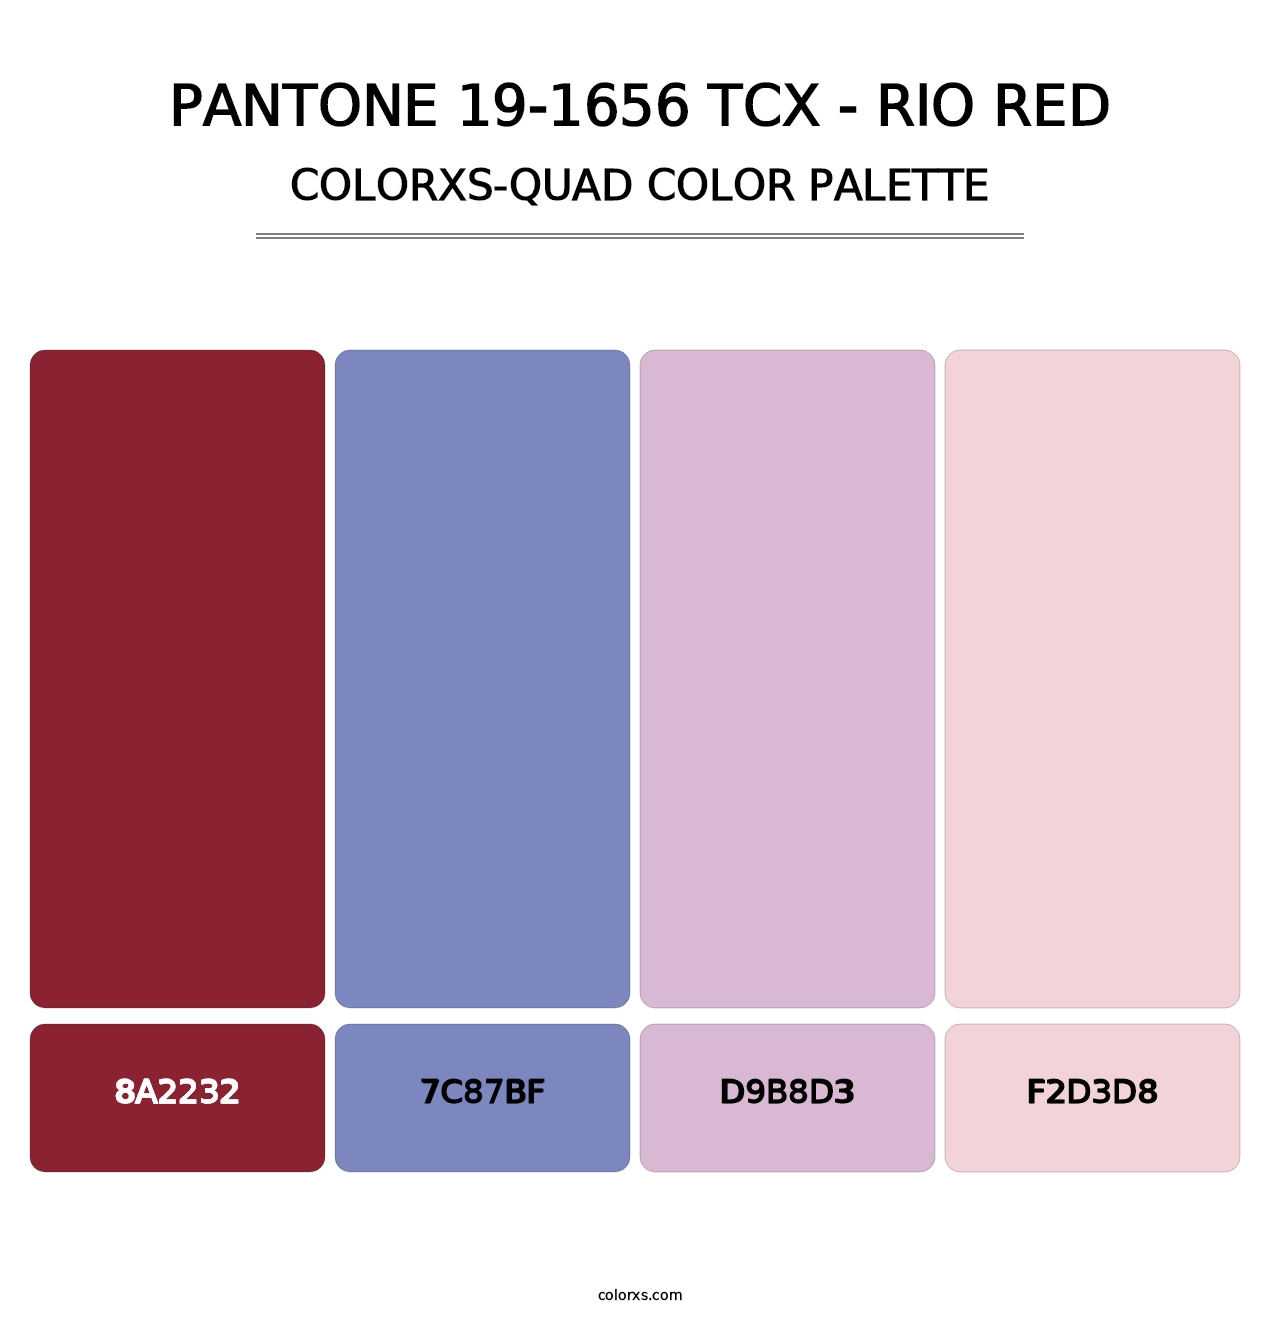 PANTONE 19-1656 TCX - Rio Red - Colorxs Quad Palette